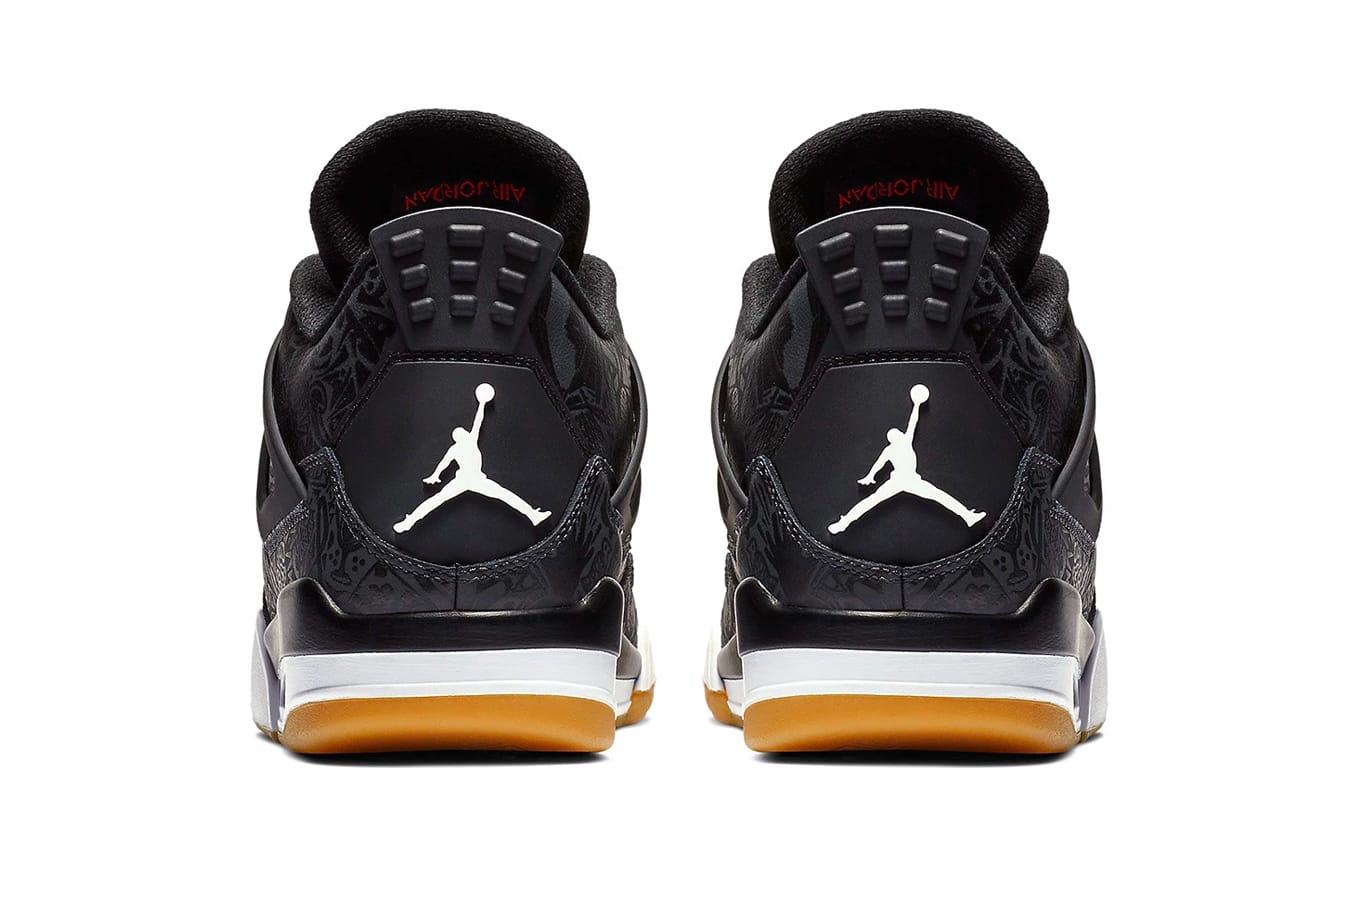 Air Jordan 4 “Black Laser” のオフィシャルビジュアルが公開 ...